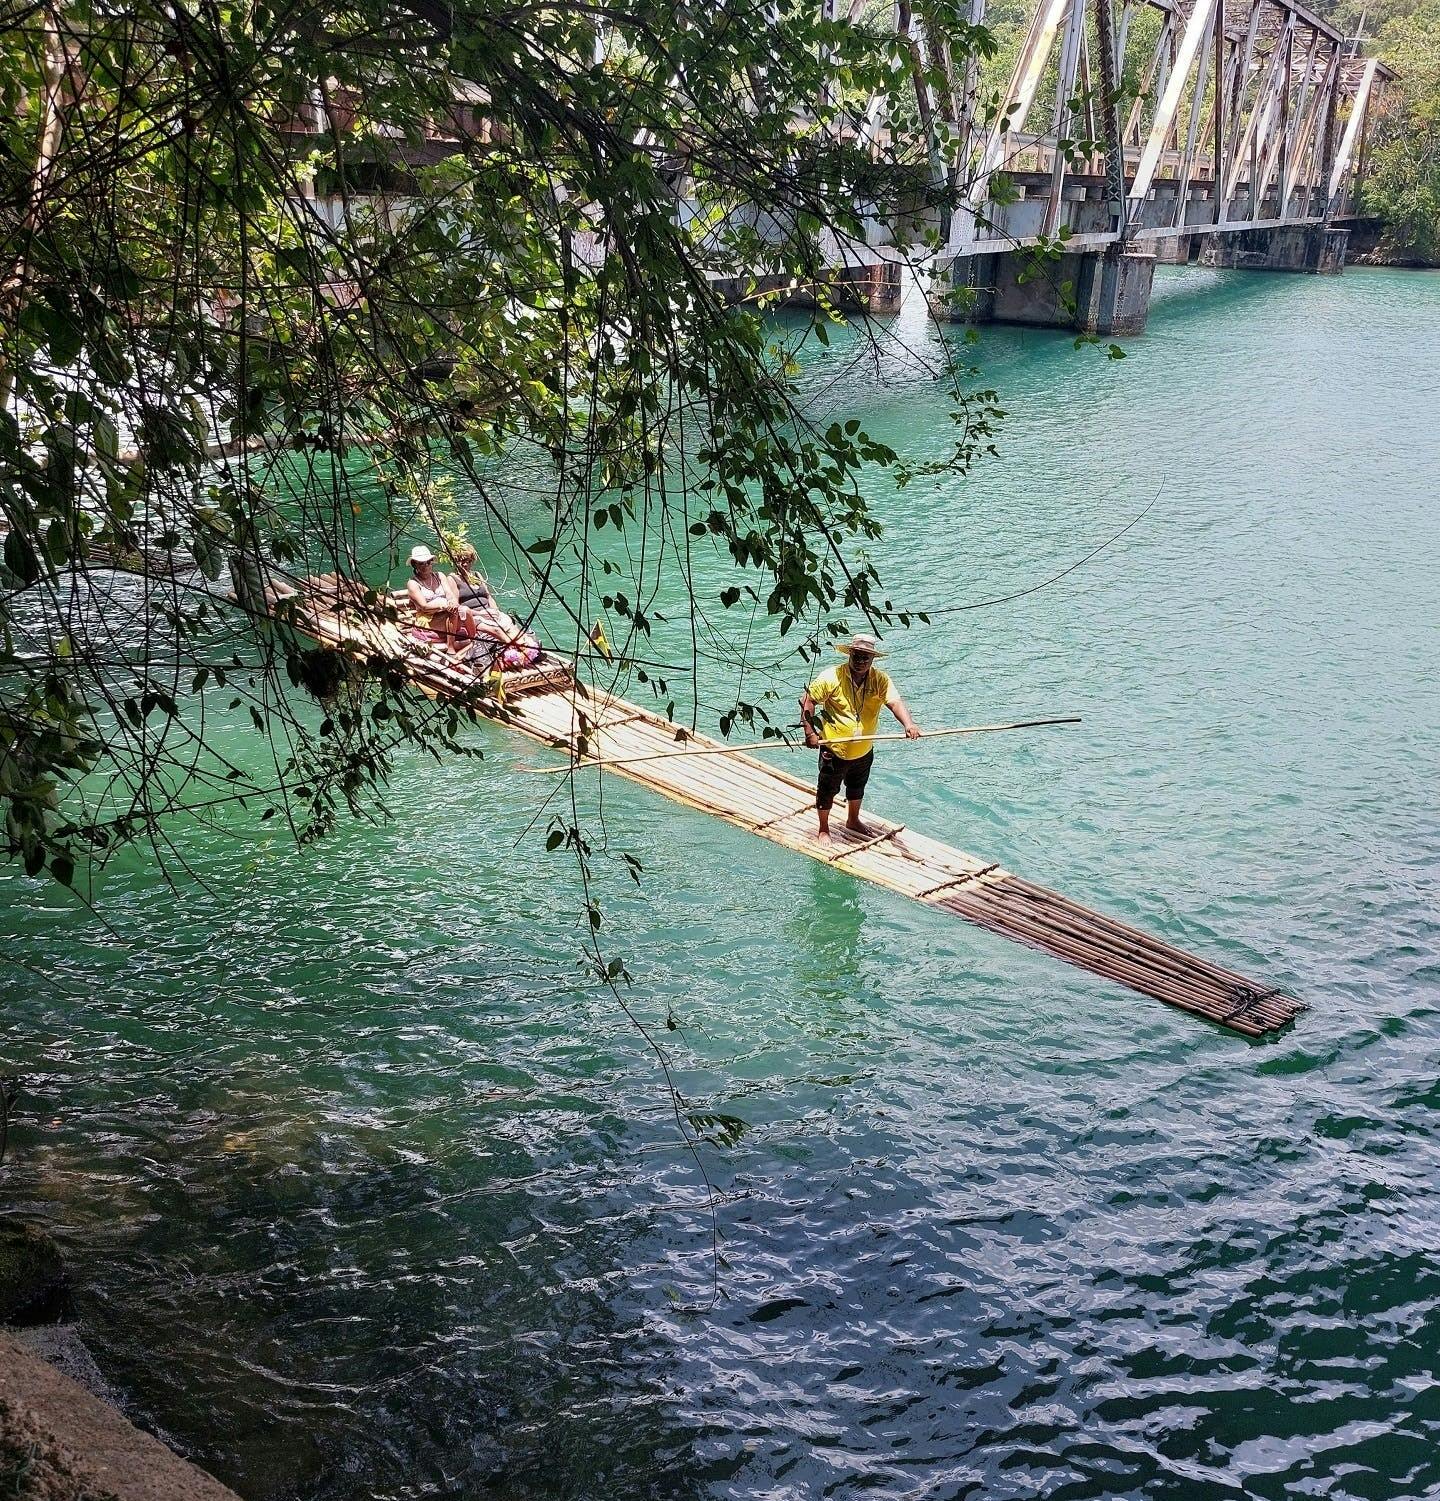 Prywatny spływ bambusem na Rio Grande